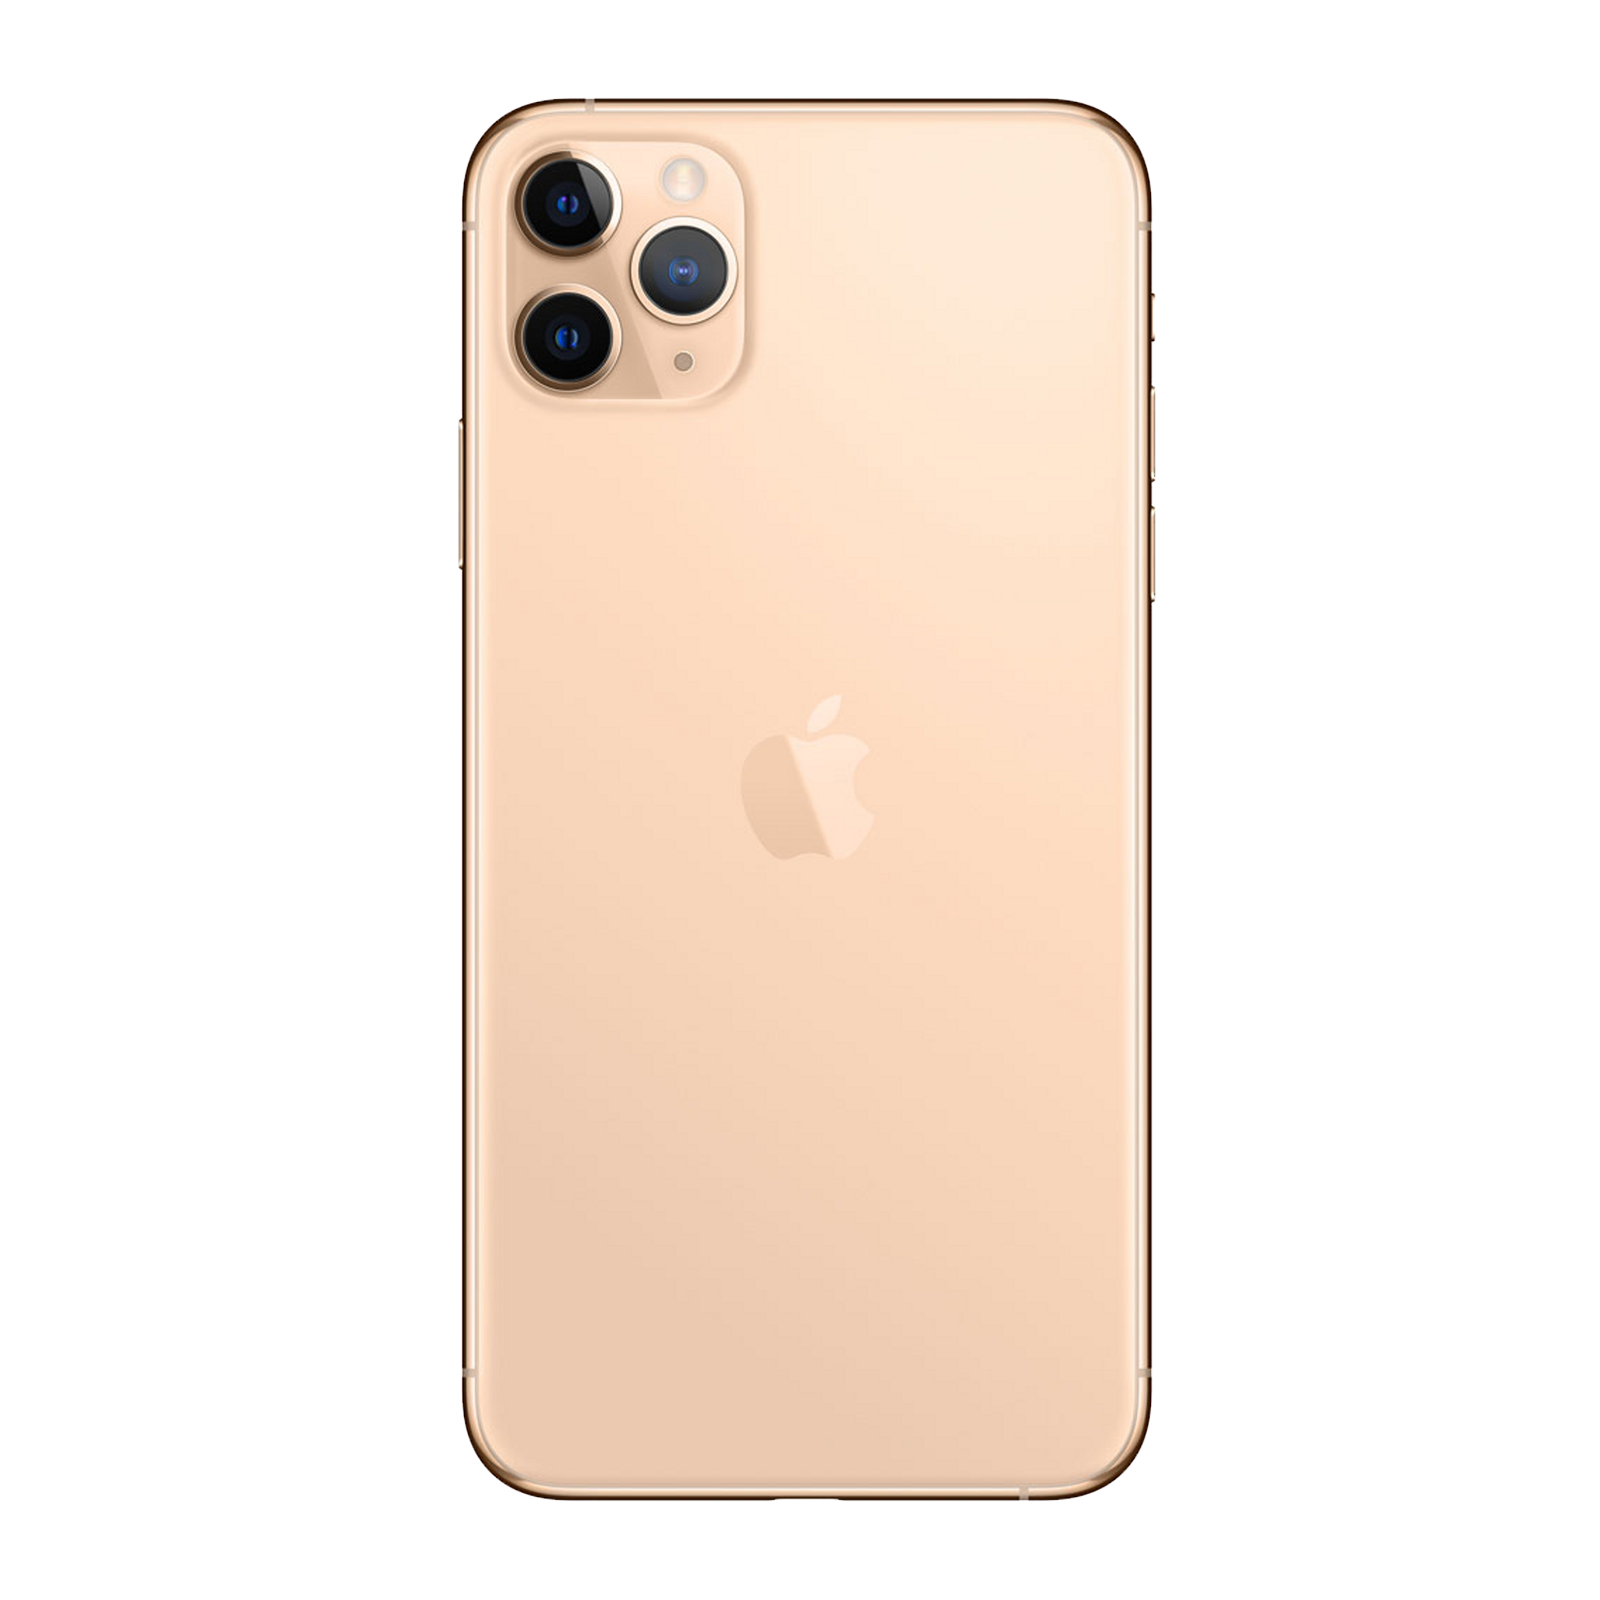 Apple iPhone 11 Pro Max 64GB Gold Pristine - T-Mobile